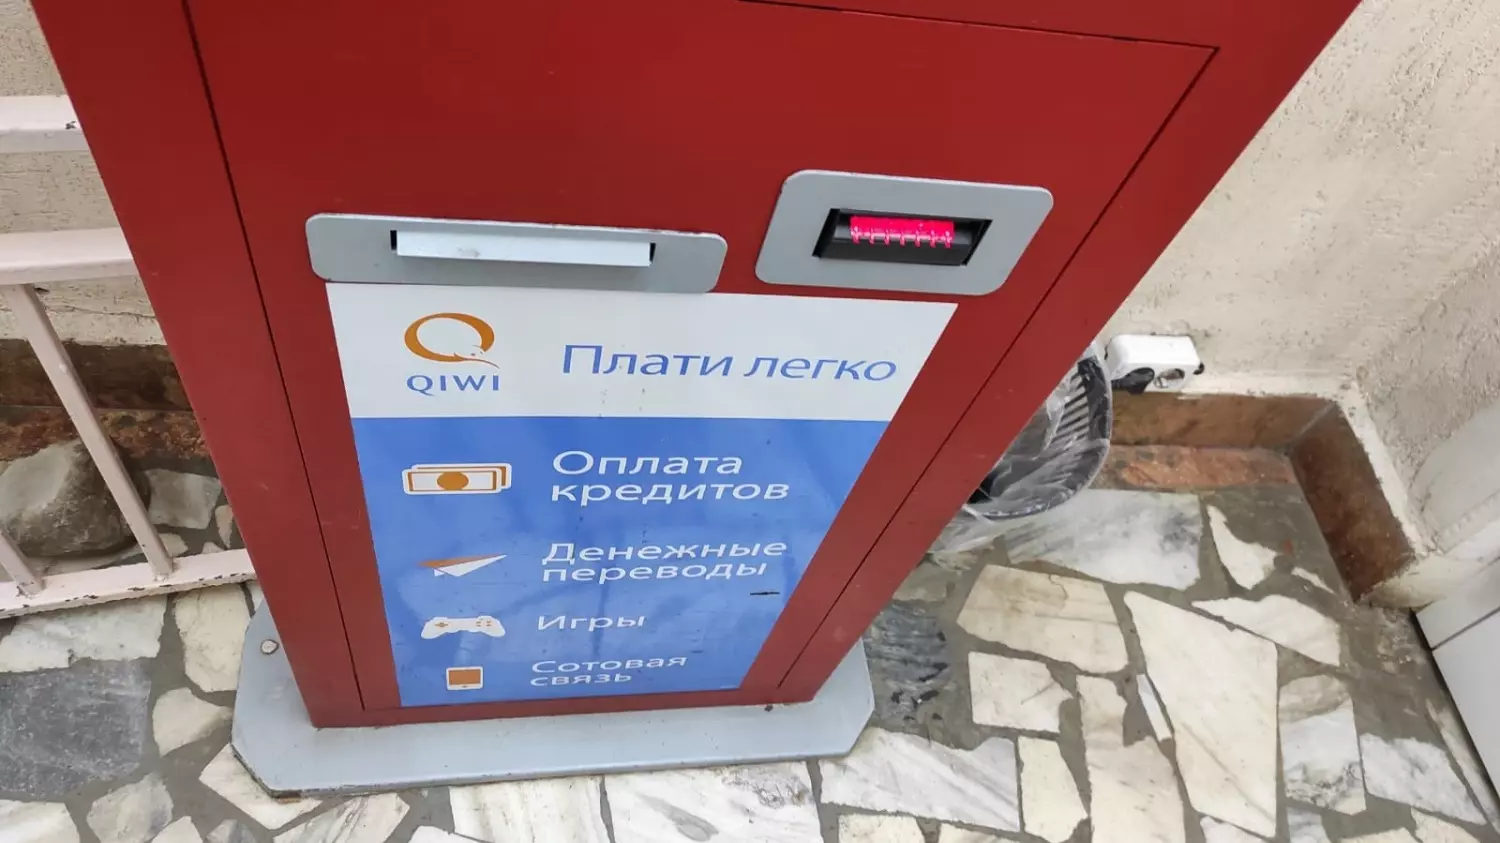 Платежные терминалы QIWI перестали работать на Ставрополье3